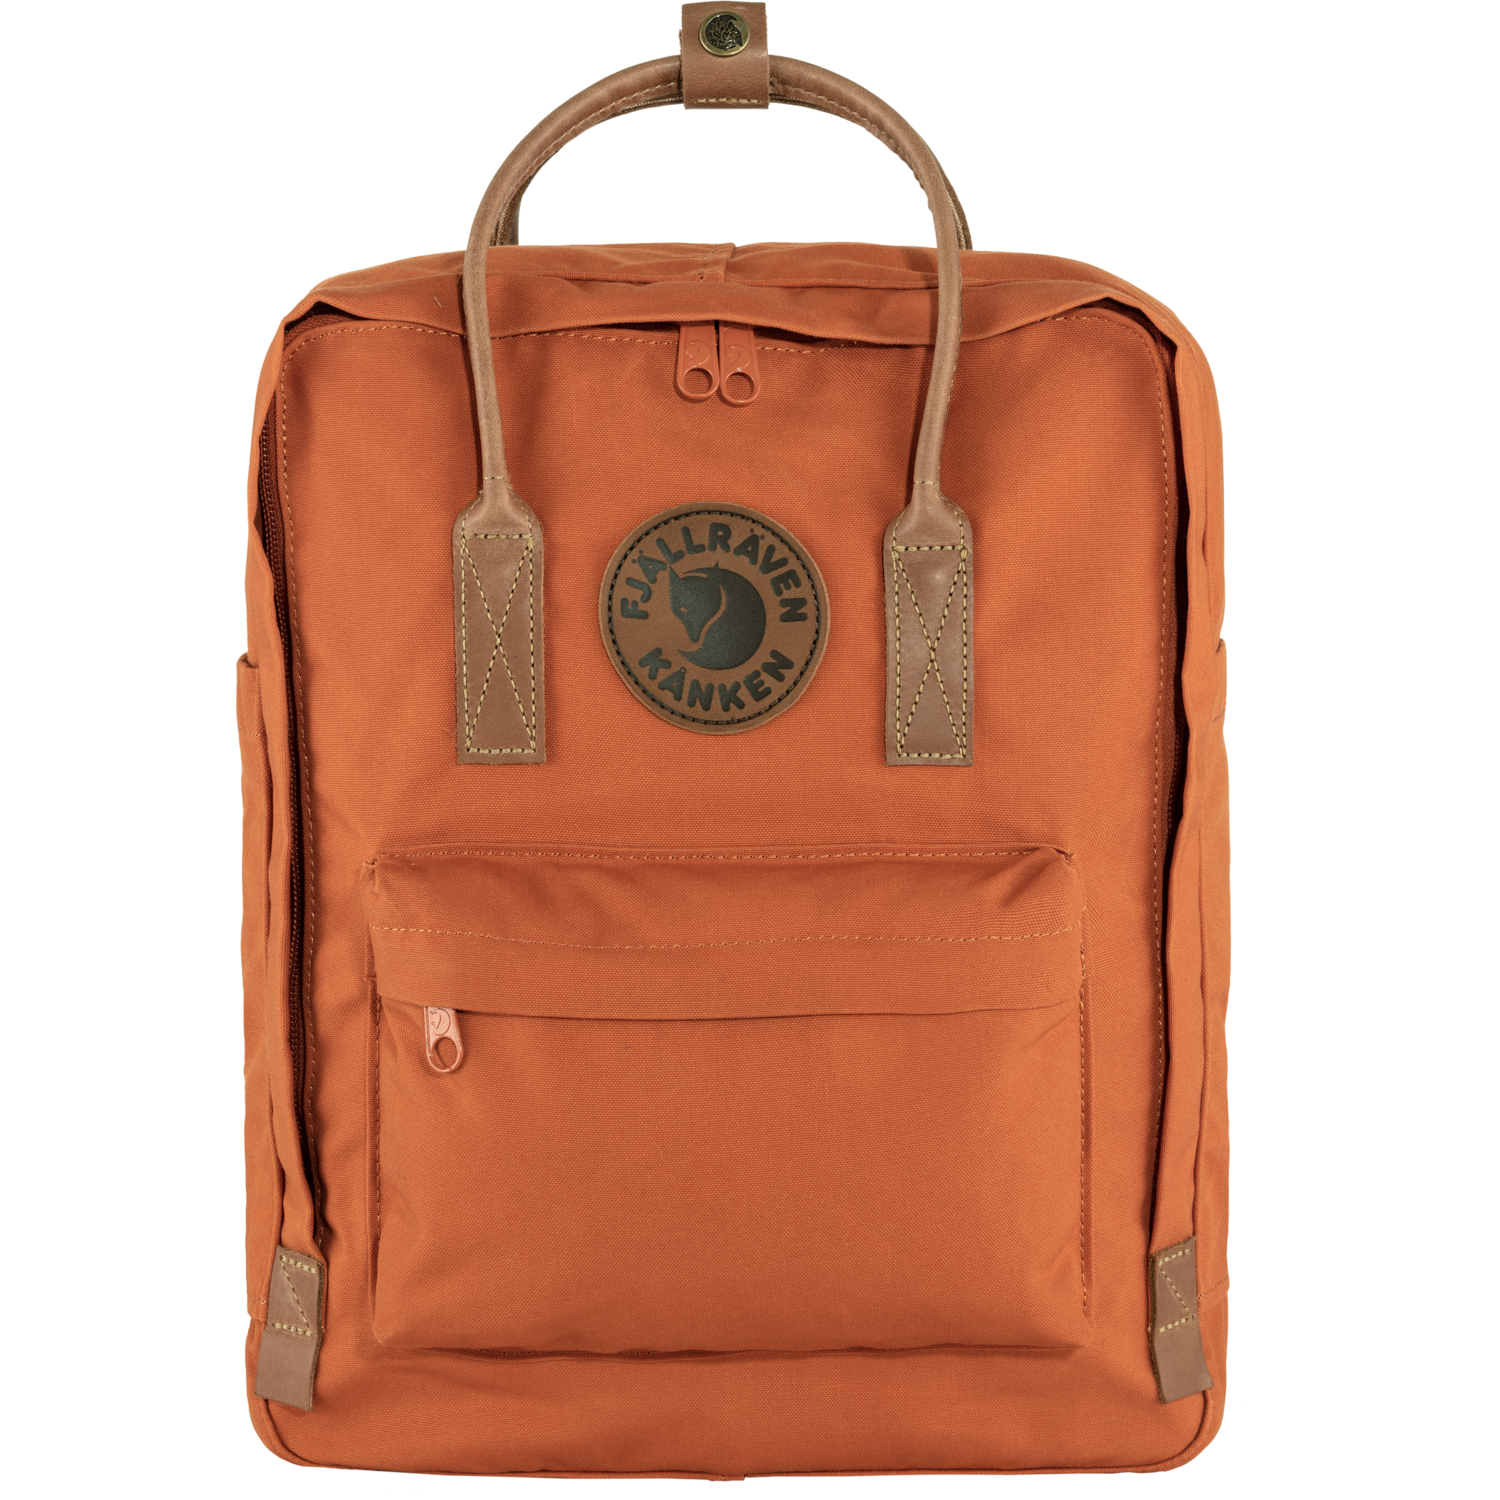 kanken no. 2 - tracotta brown kanken backpack